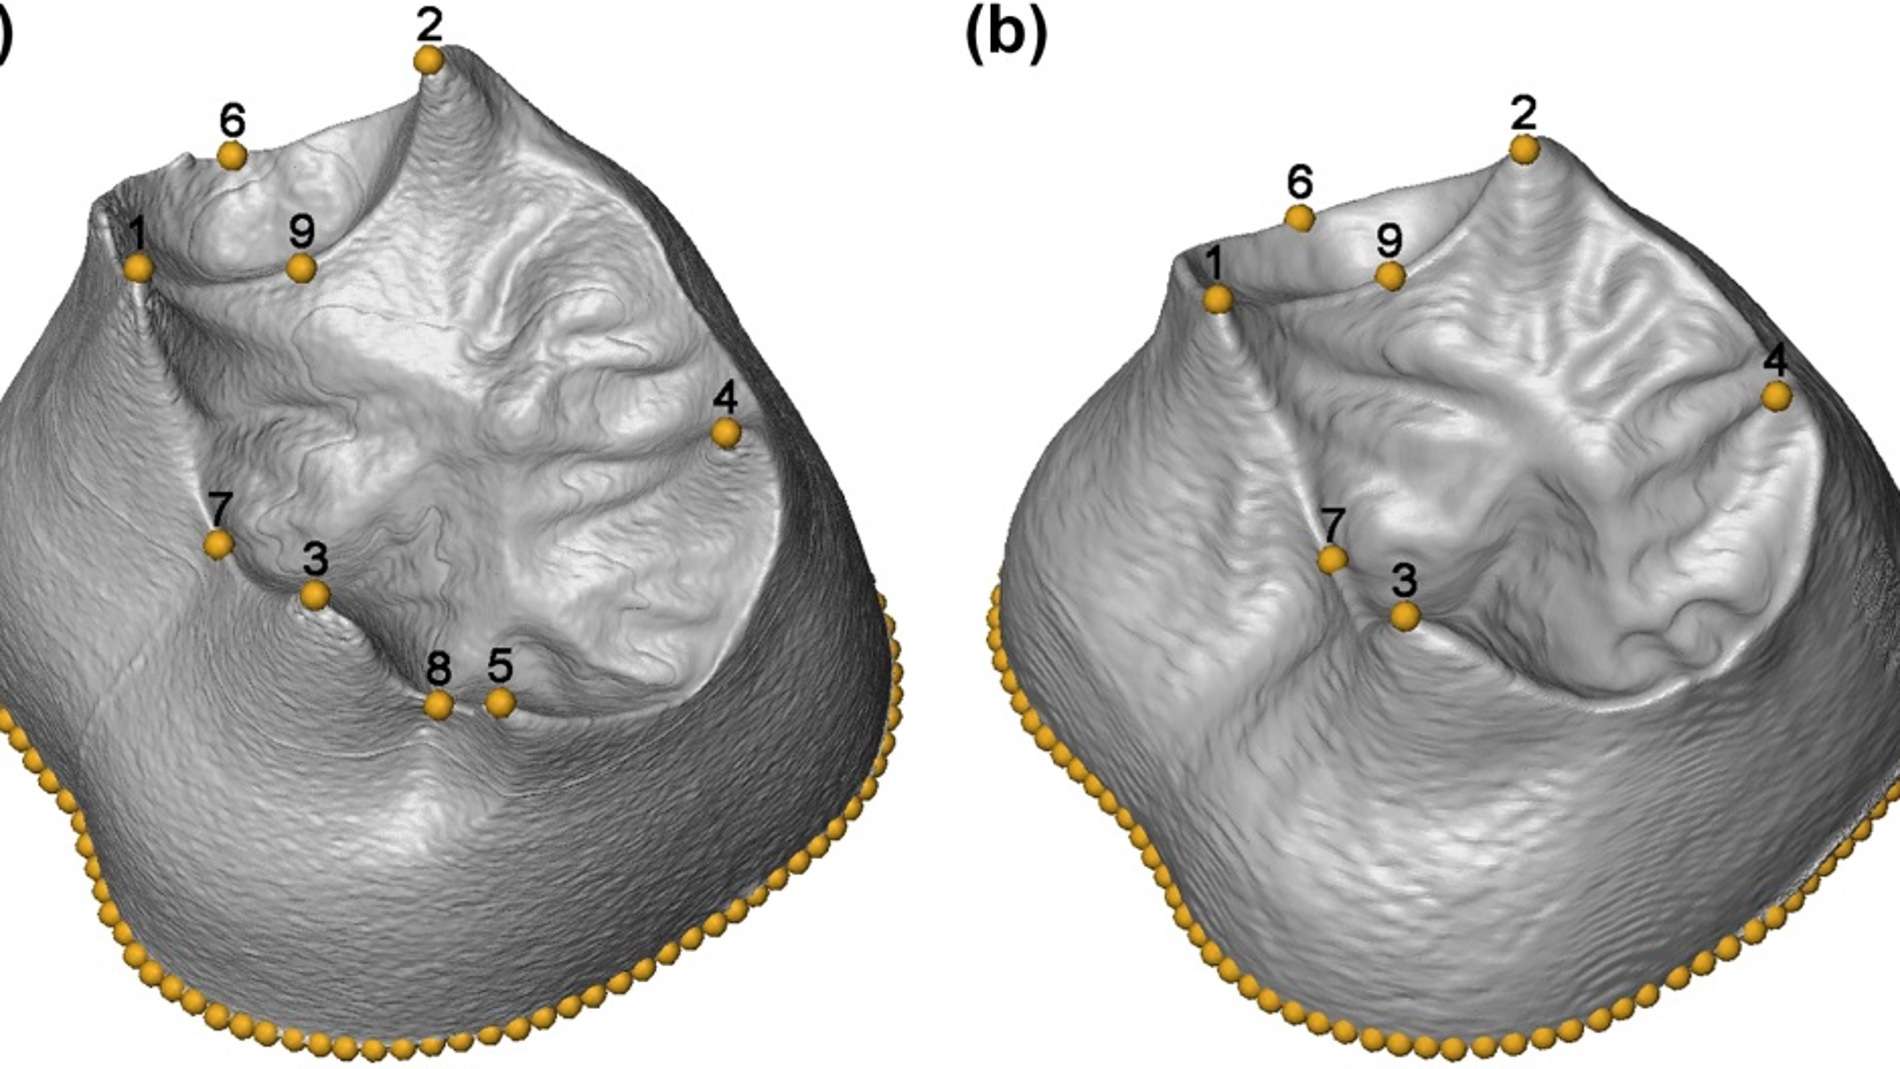 Primer estudio morfologico en 3D de los molares hallados en la Sima de los Huesos